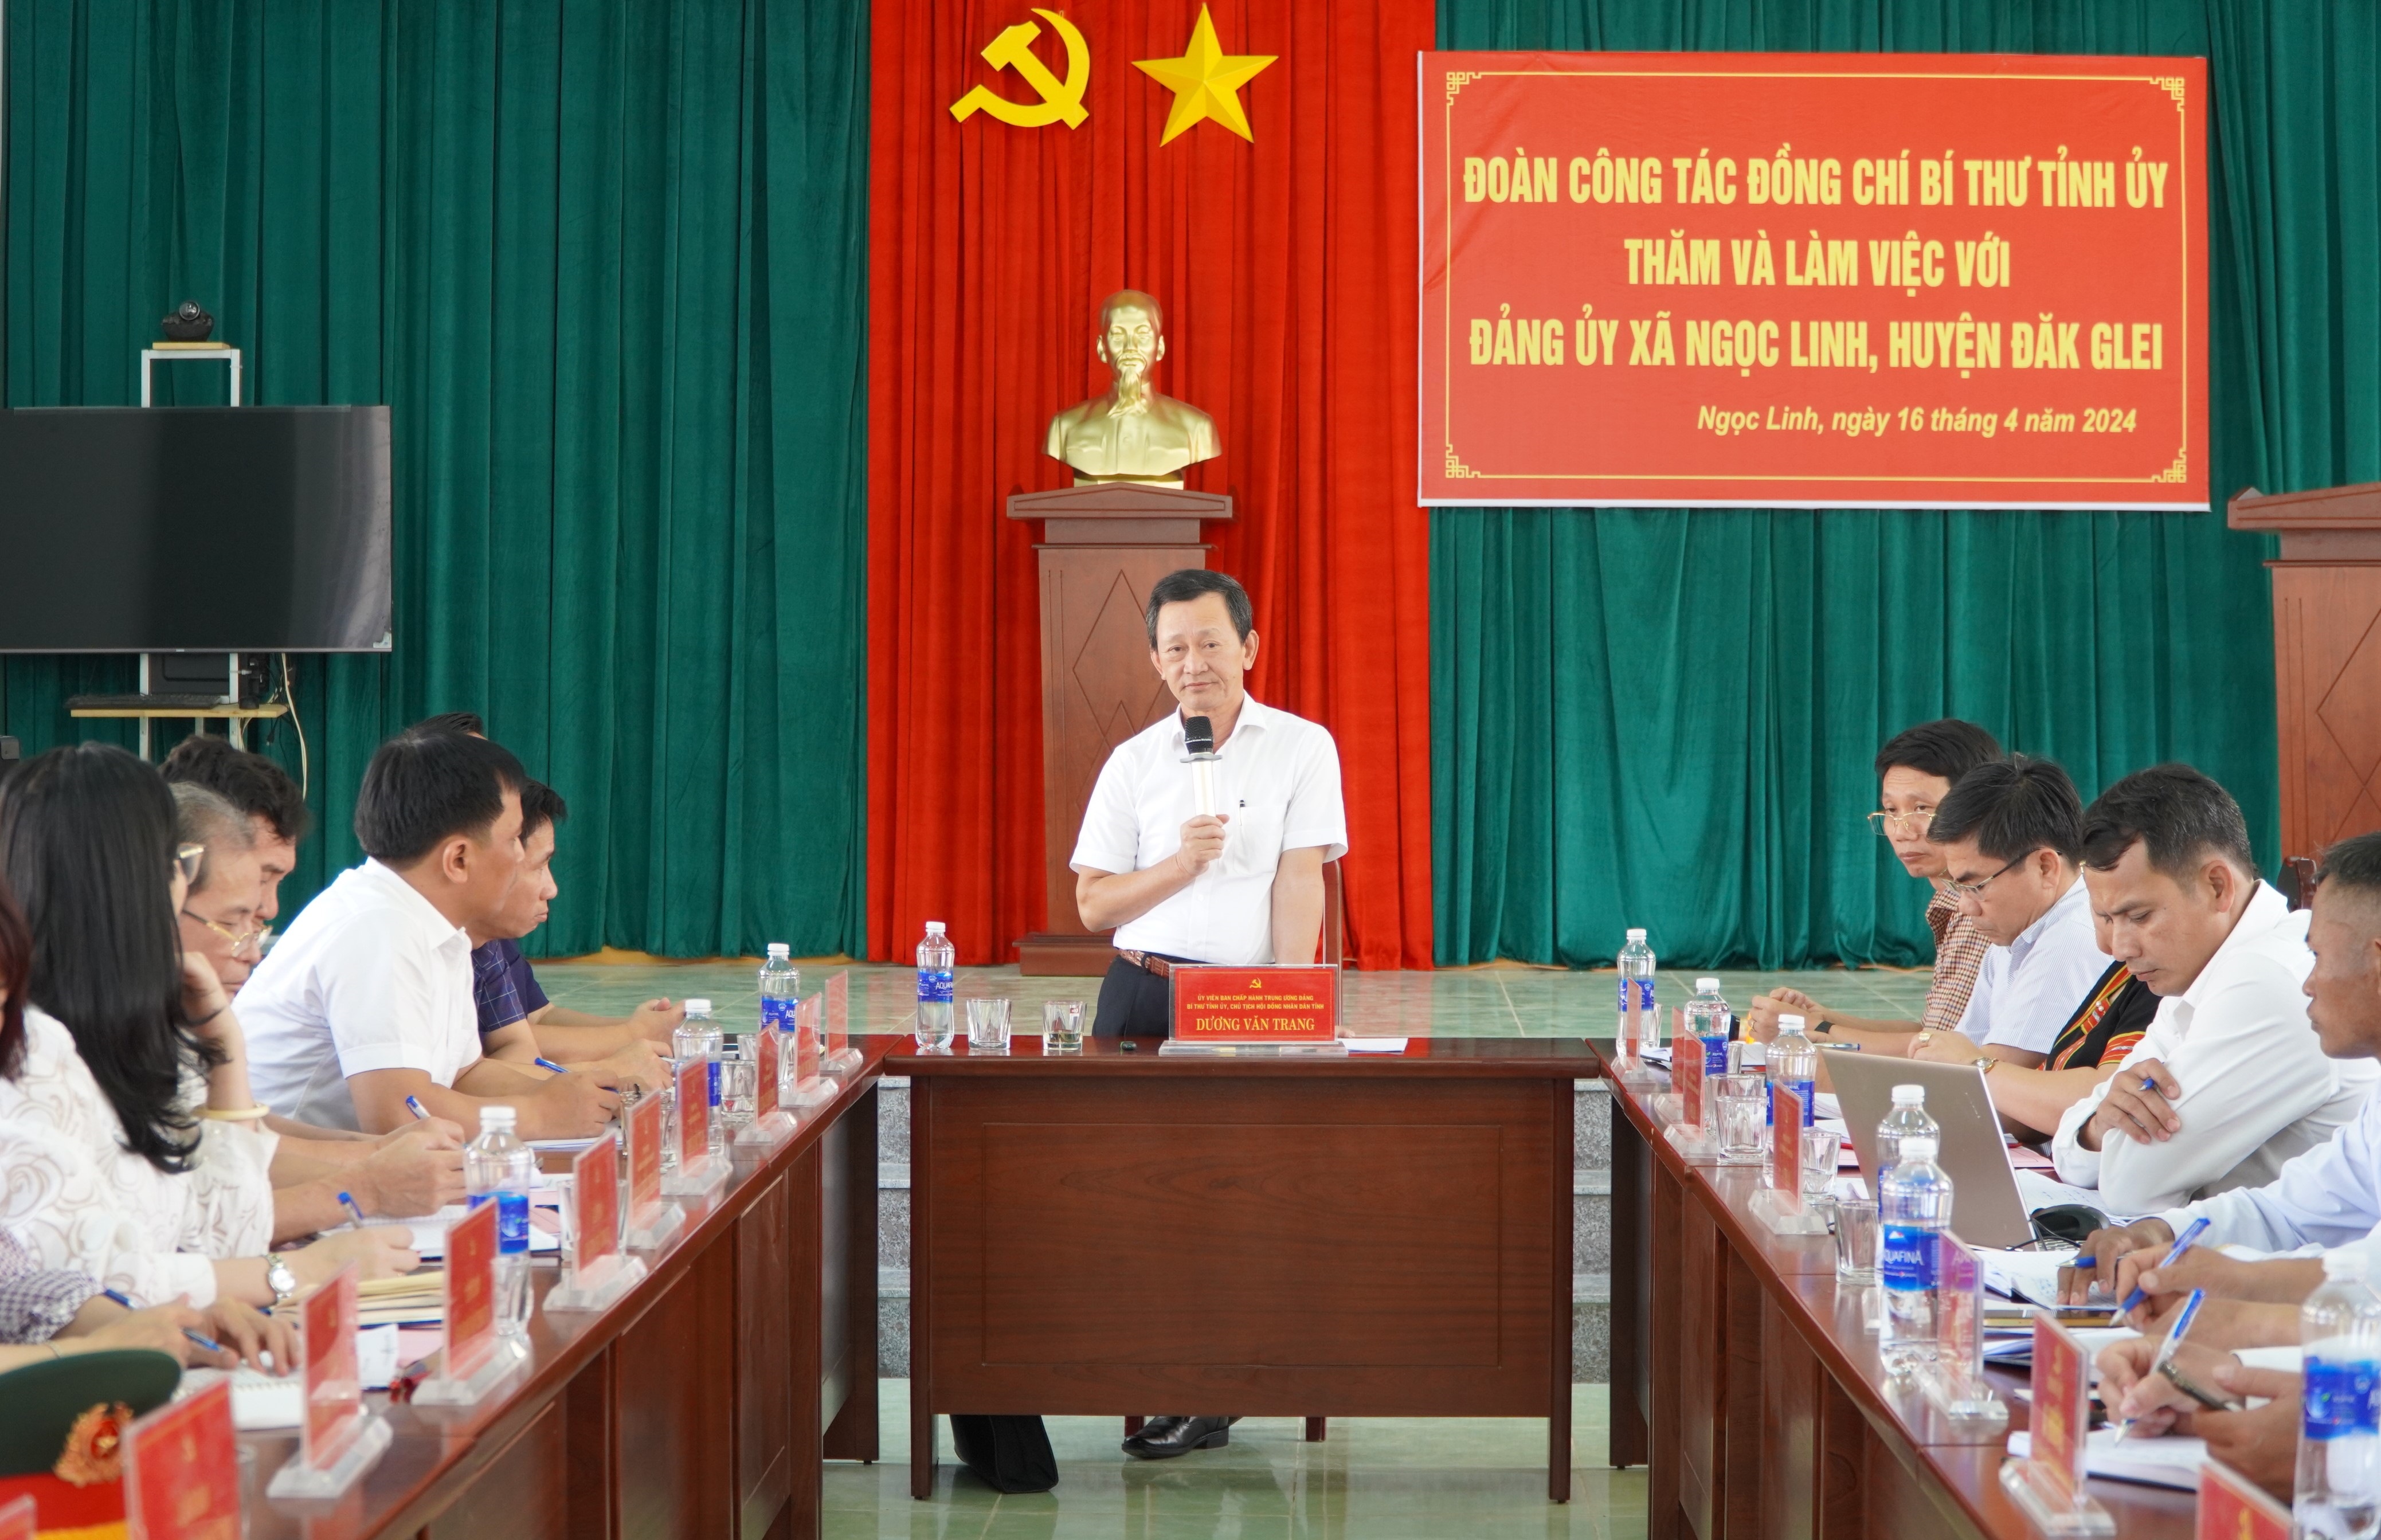 Bí thư Tỉnh ủy Dương Văn Trang làm việc tại xã Ngọc Linh